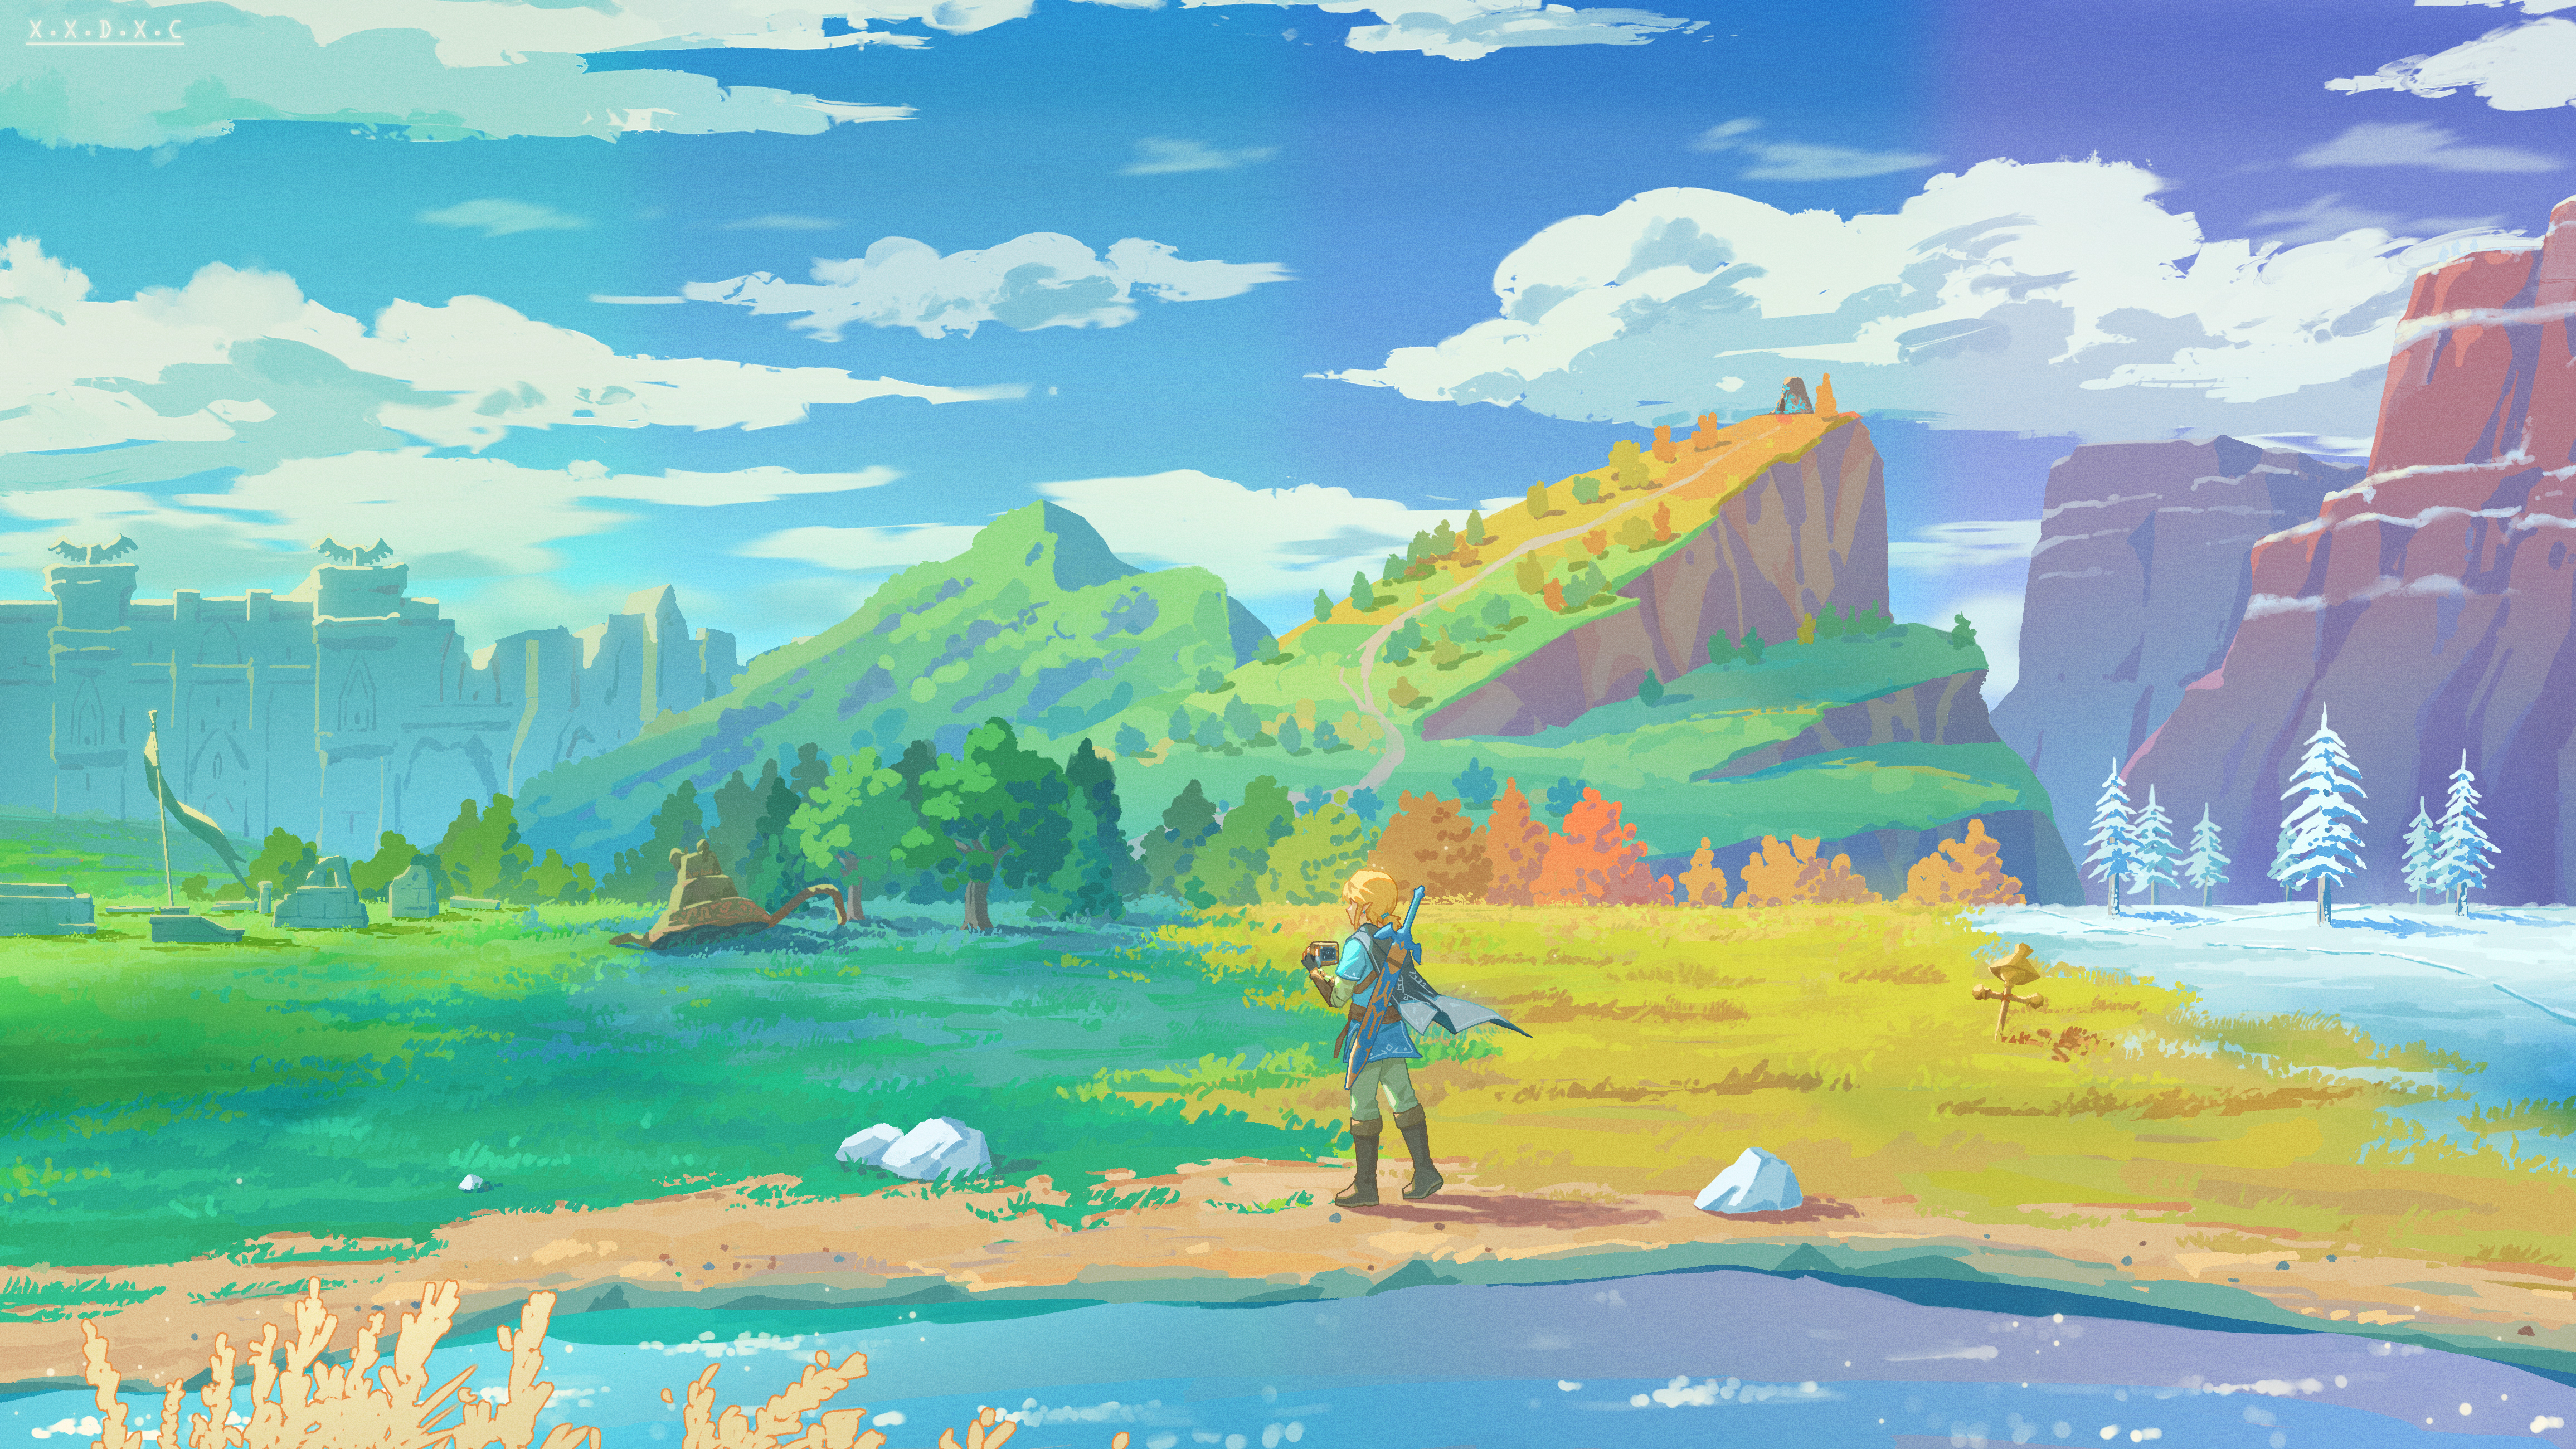 Video Game The Legend of Zelda: Breath of the Wild The Legend of Zelda Link  Wallpaper